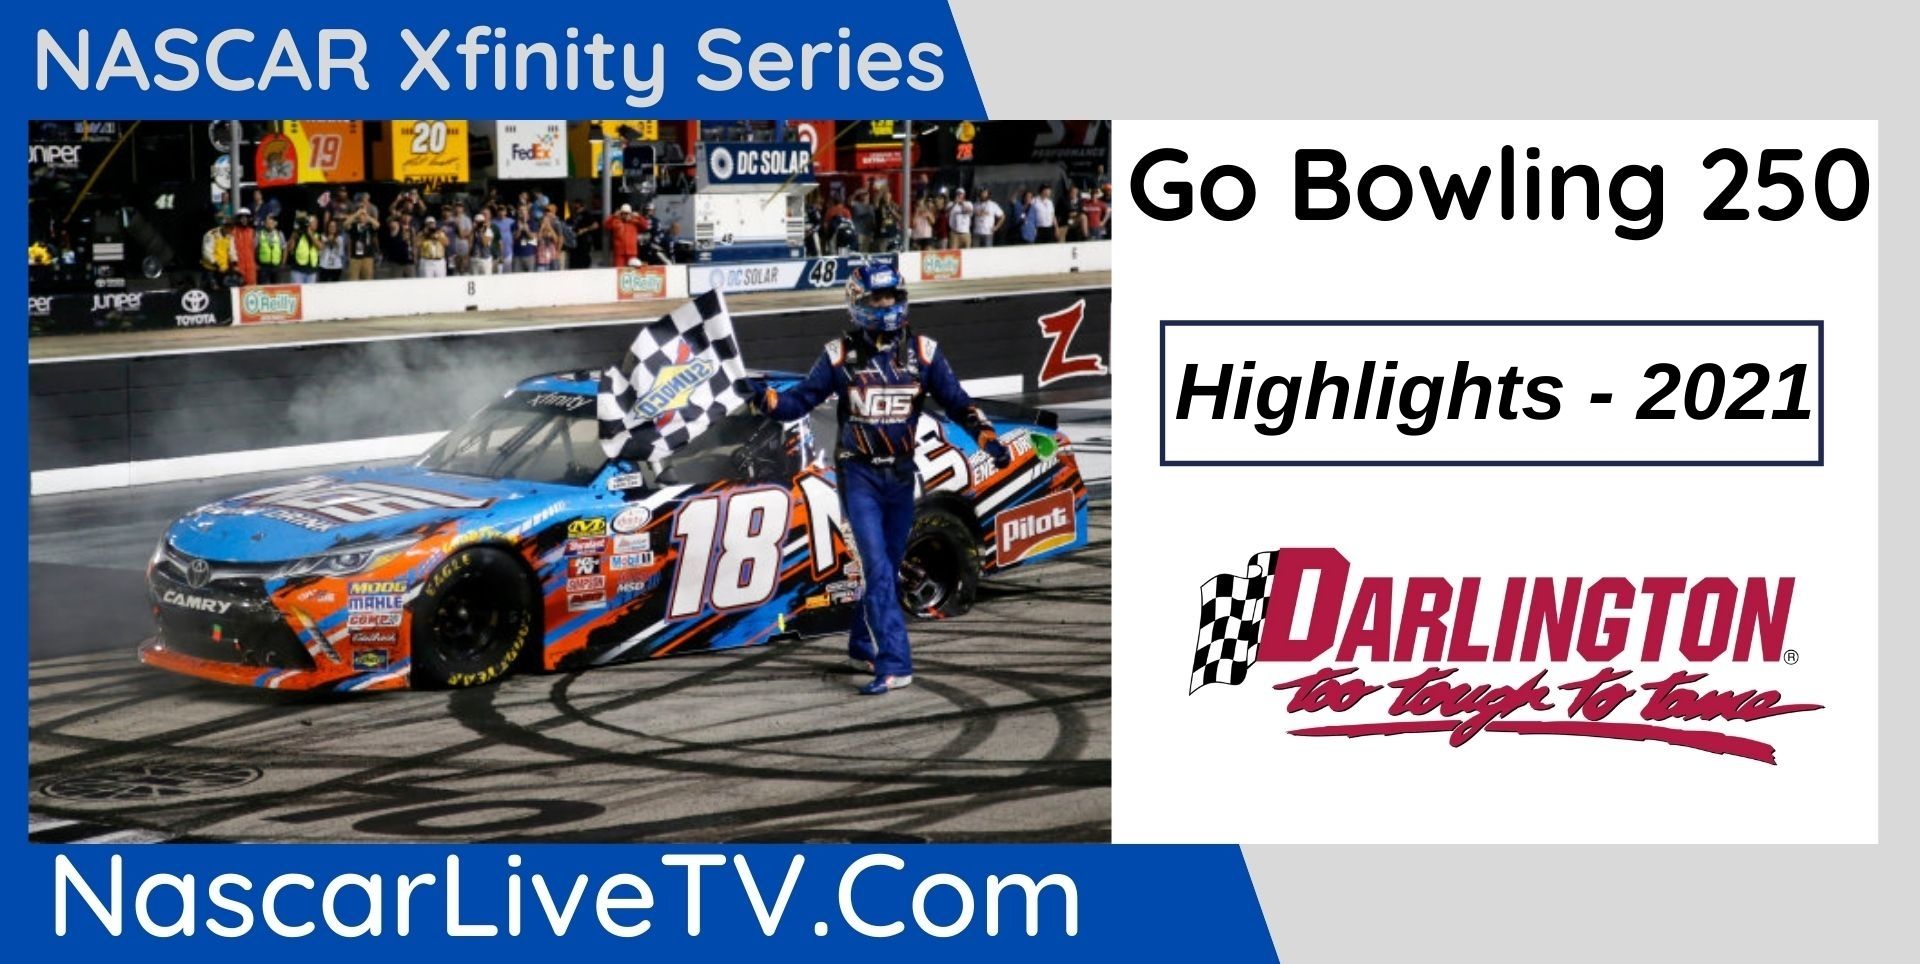 Go Bowling 250 Highlights NASCAR Xfinity Series 2021